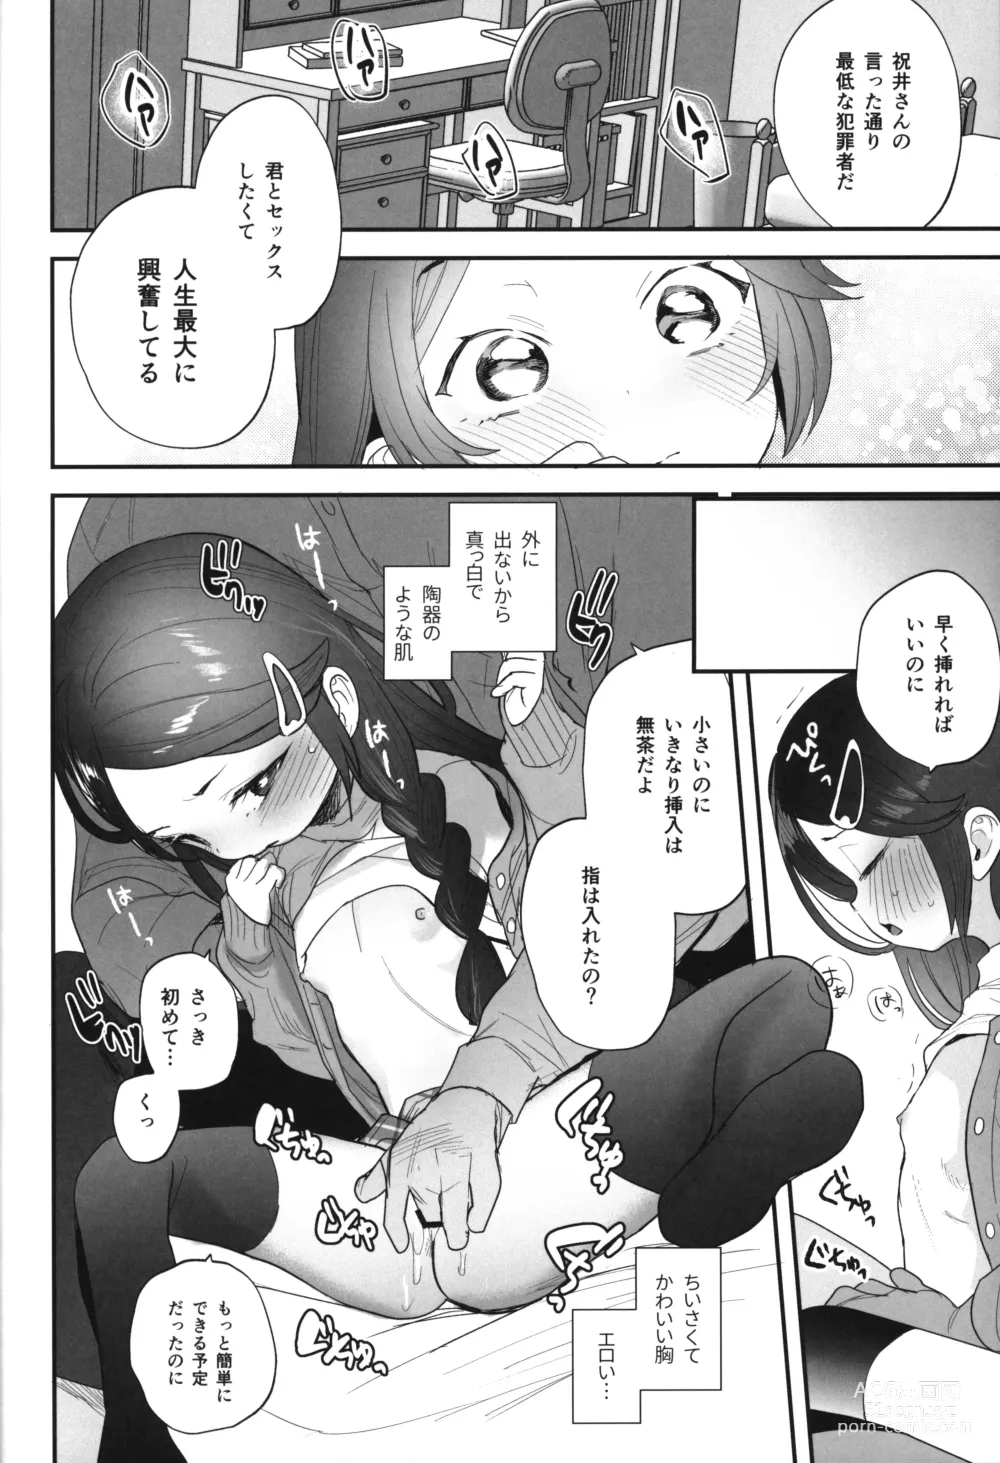 Page 11 of doujinshi Futoukou de Daitensai no Kimi no Ana ga Umaru made